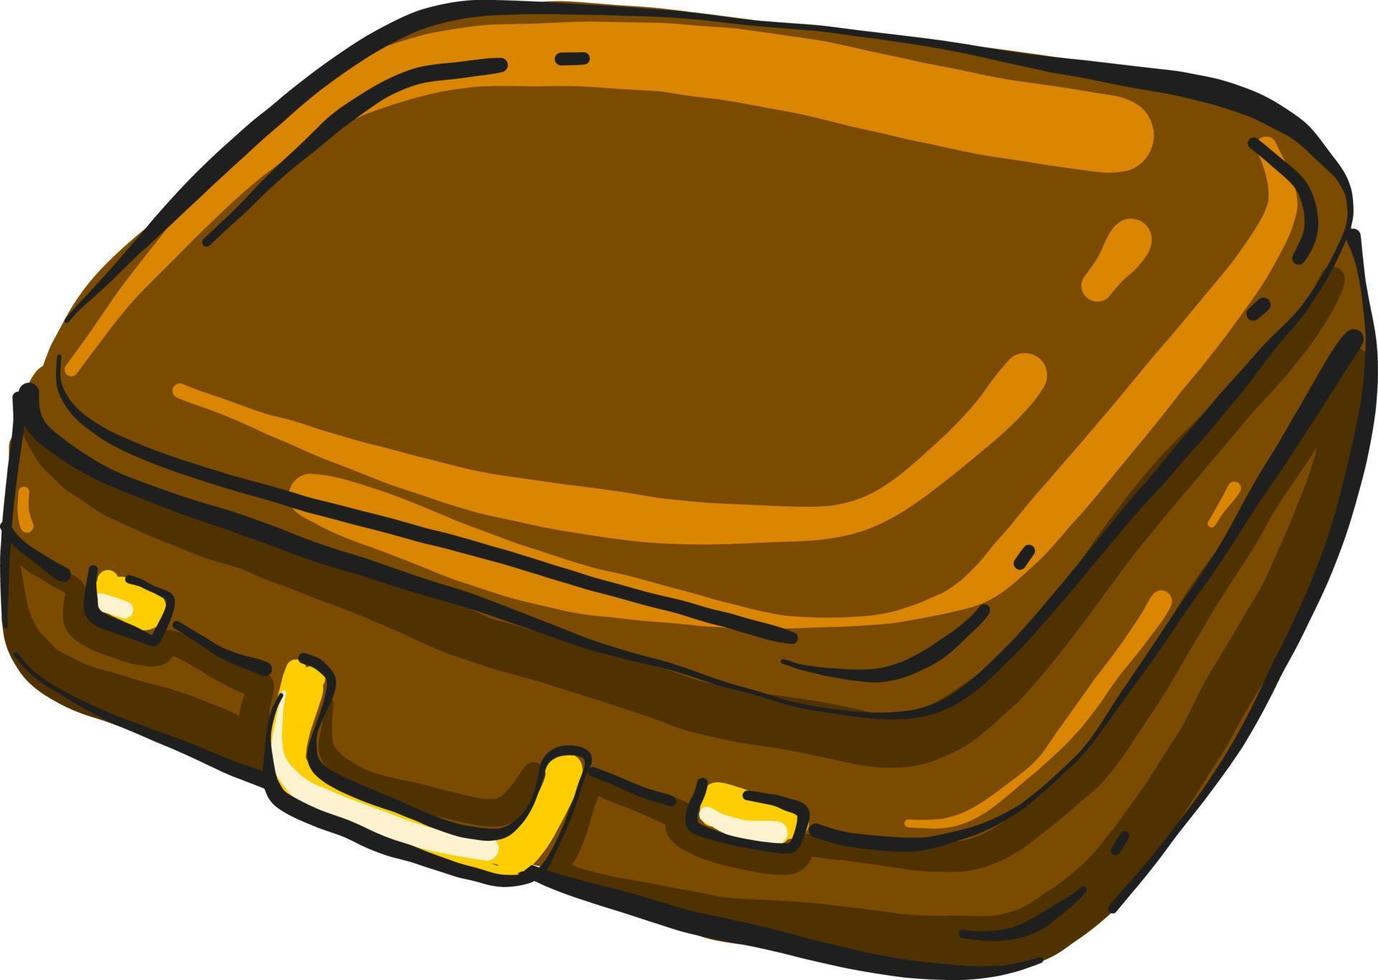 gewöhnlicher brauner Koffer, Illustration, Vektor auf weißem Hintergrund.